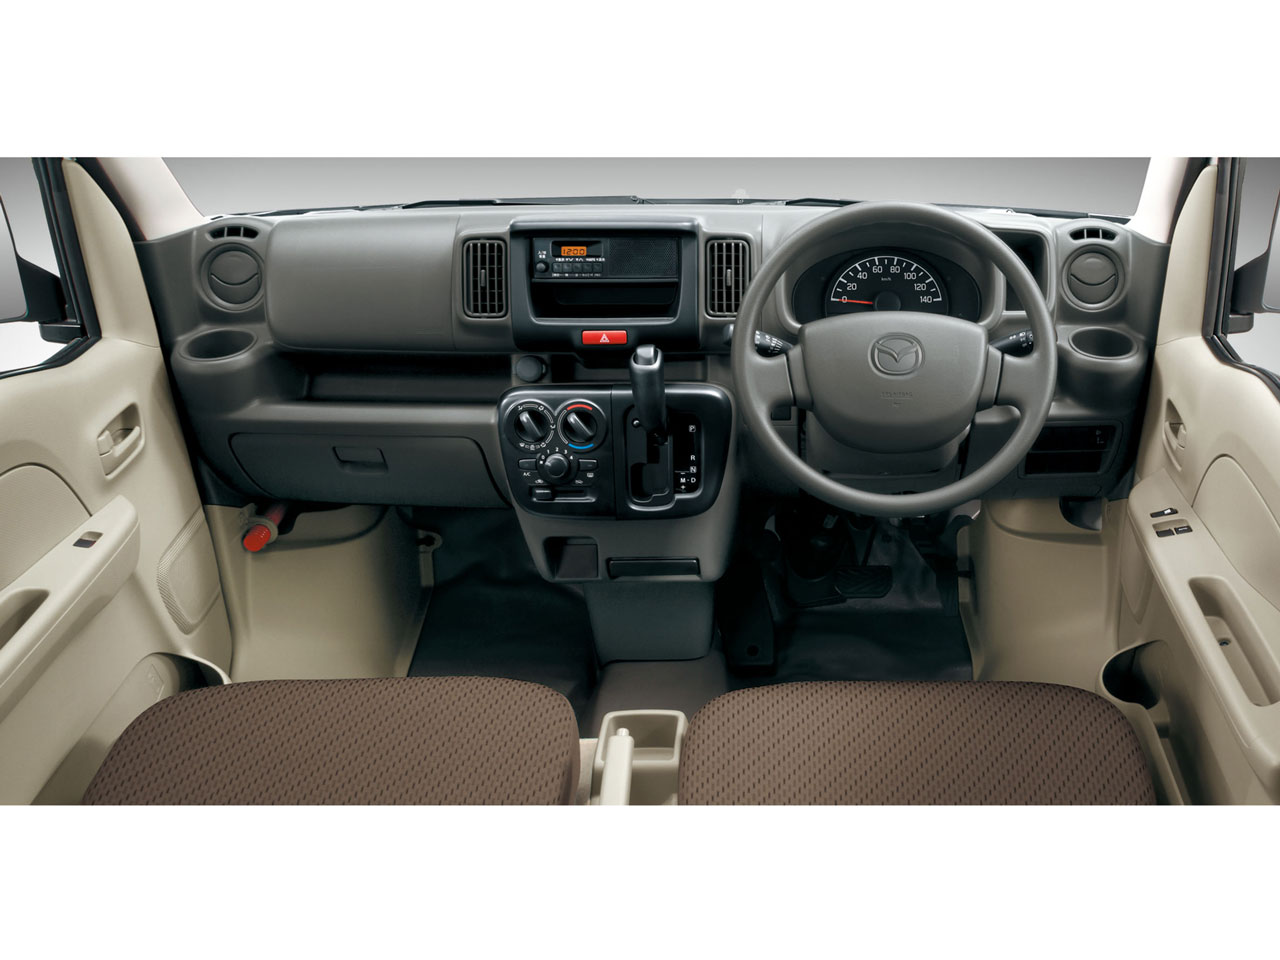 マツダ スクラム バン 商用車 2015年モデル PCの価格・性能・装備